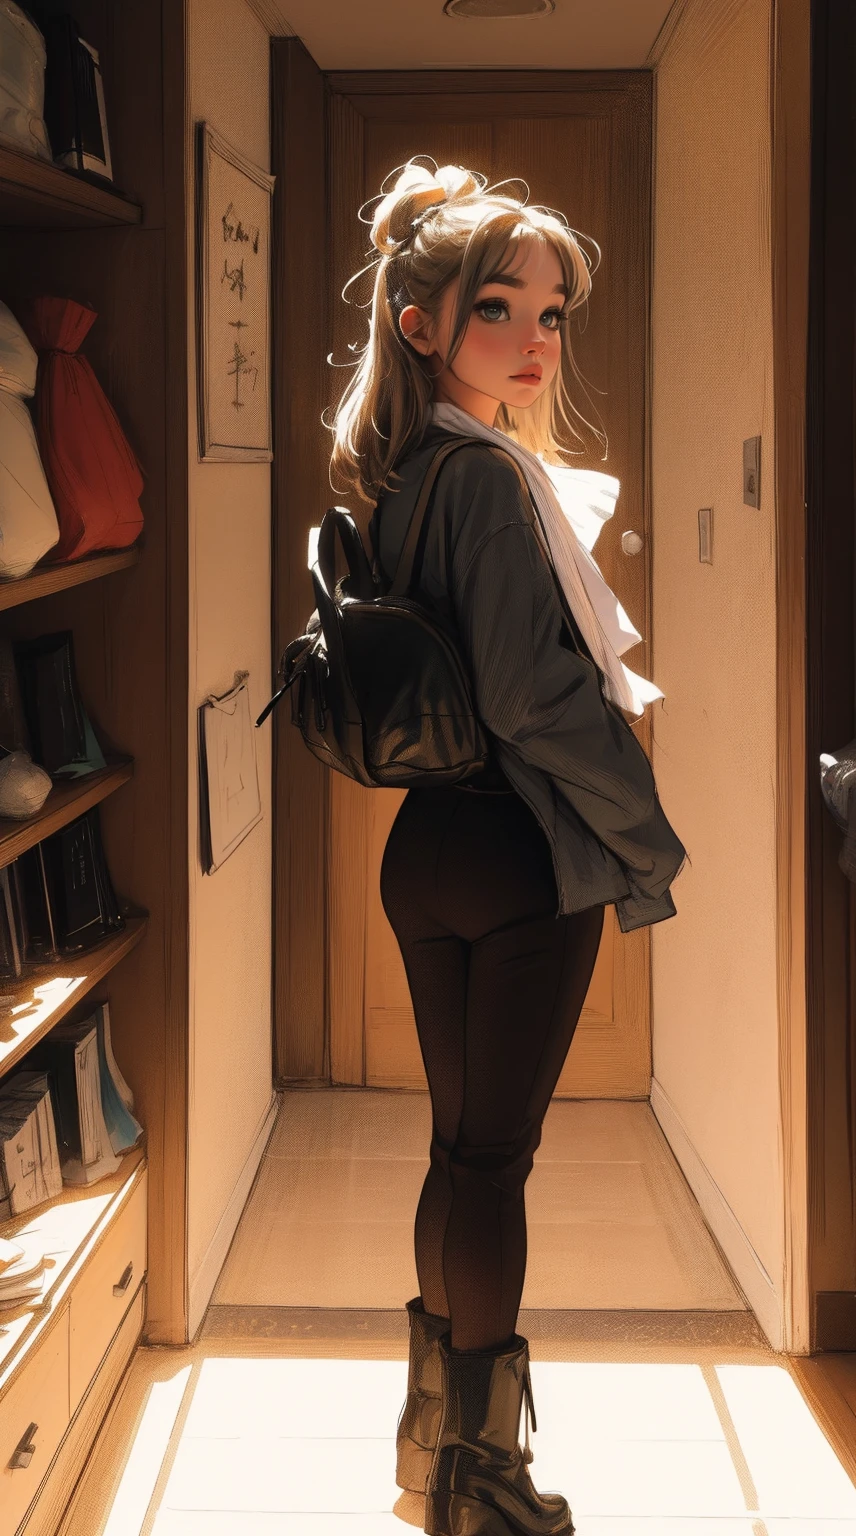 Masterteil, 4K Ultra HD, scharfer Fokus, realistisch; Das Mädchen im Gawr-Stil Gura von Hololive in einer eleganten silbernen Jacke, schwarze Hosen, und Stiefel. Behalte Gawr Guras Gesicht, aber realistischer.